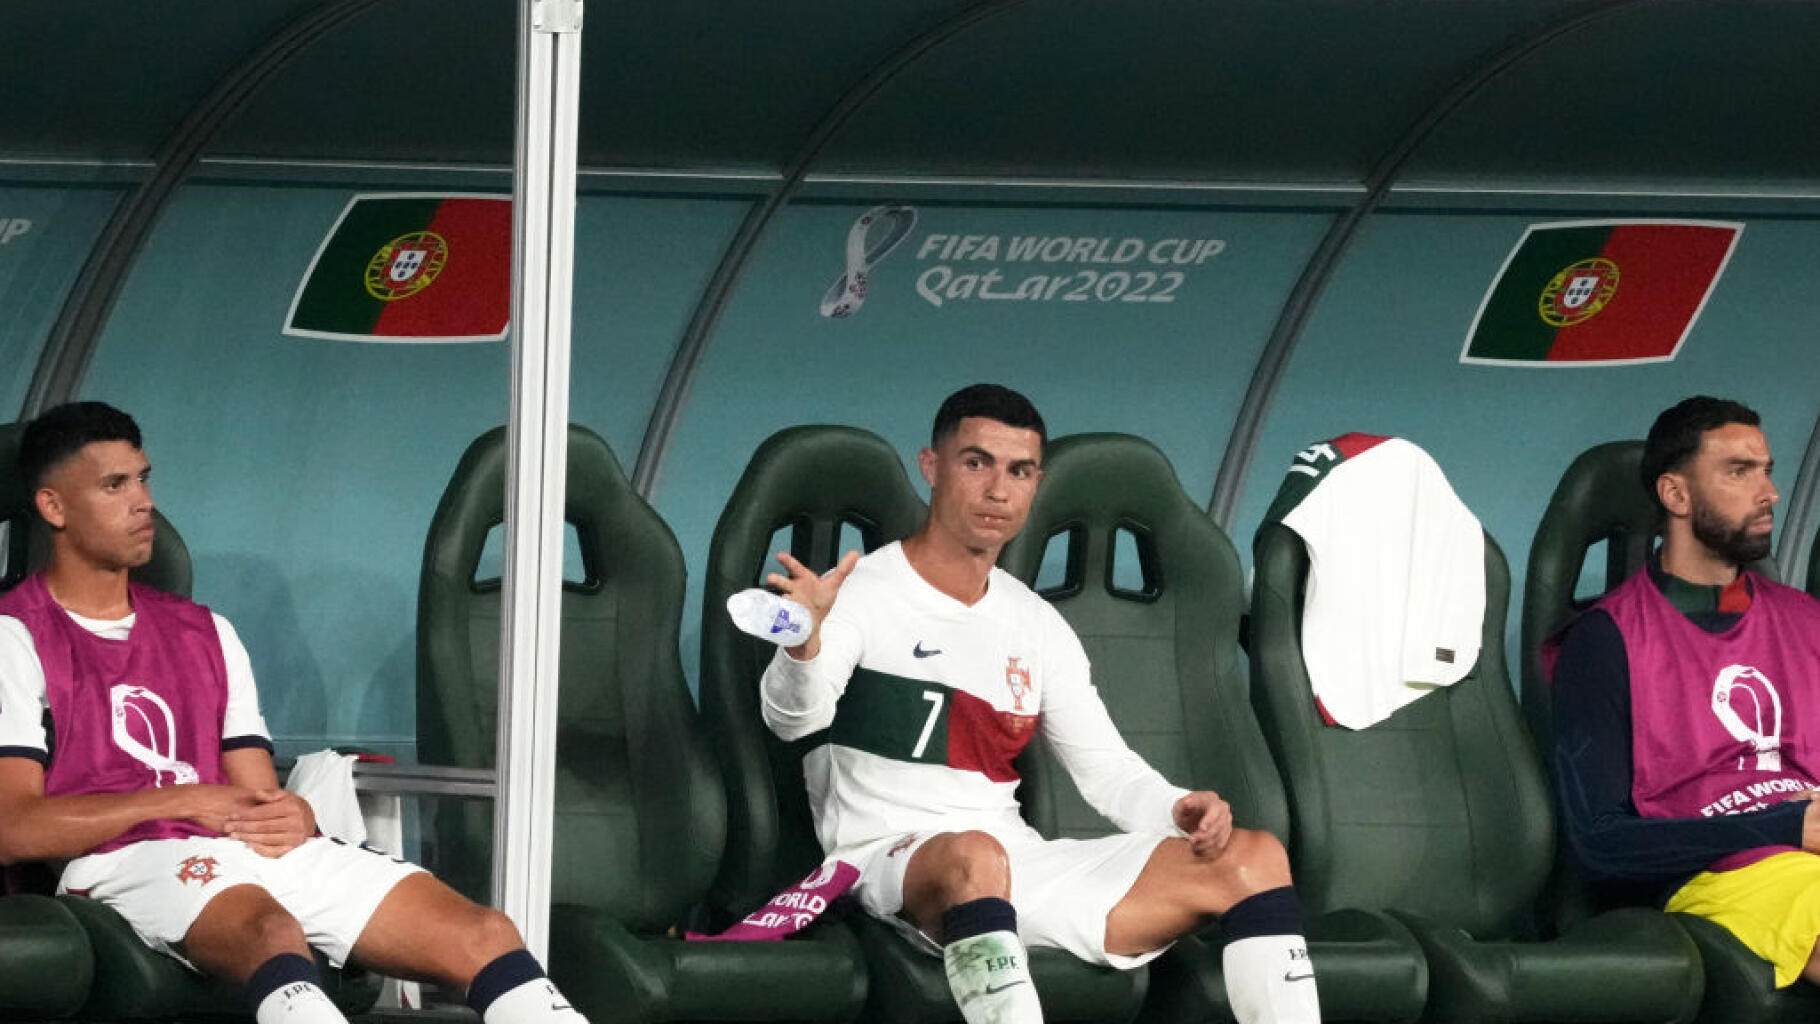 On sait pourquoi Ronaldo est sorti furax de son match contre la Corée du Sud